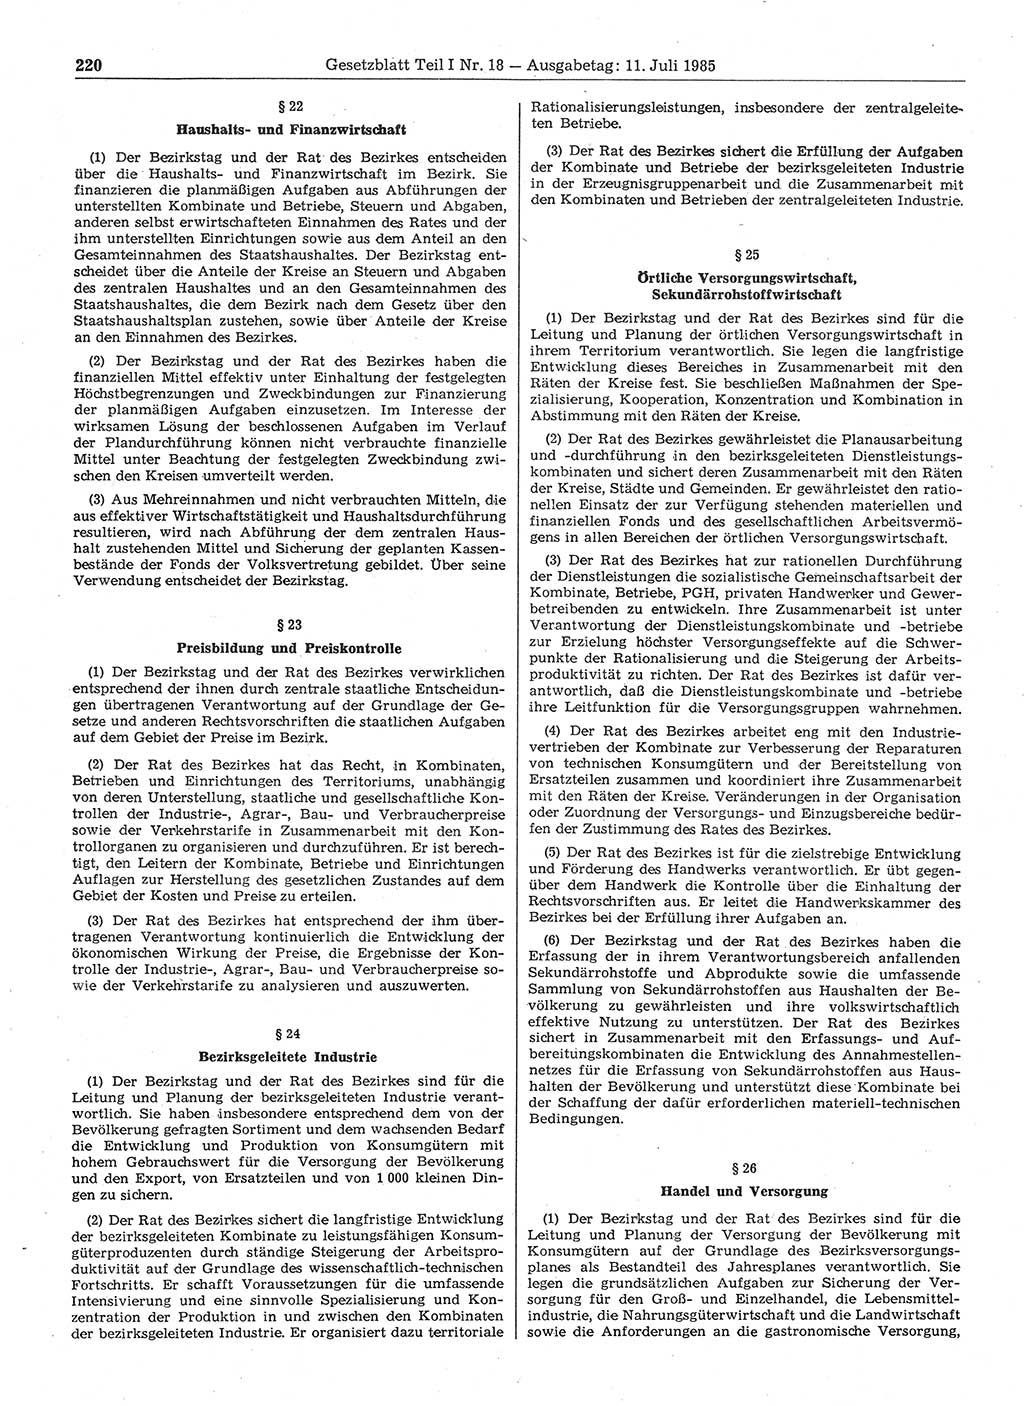 Gesetzblatt (GBl.) der Deutschen Demokratischen Republik (DDR) Teil Ⅰ 1985, Seite 220 (GBl. DDR Ⅰ 1985, S. 220)